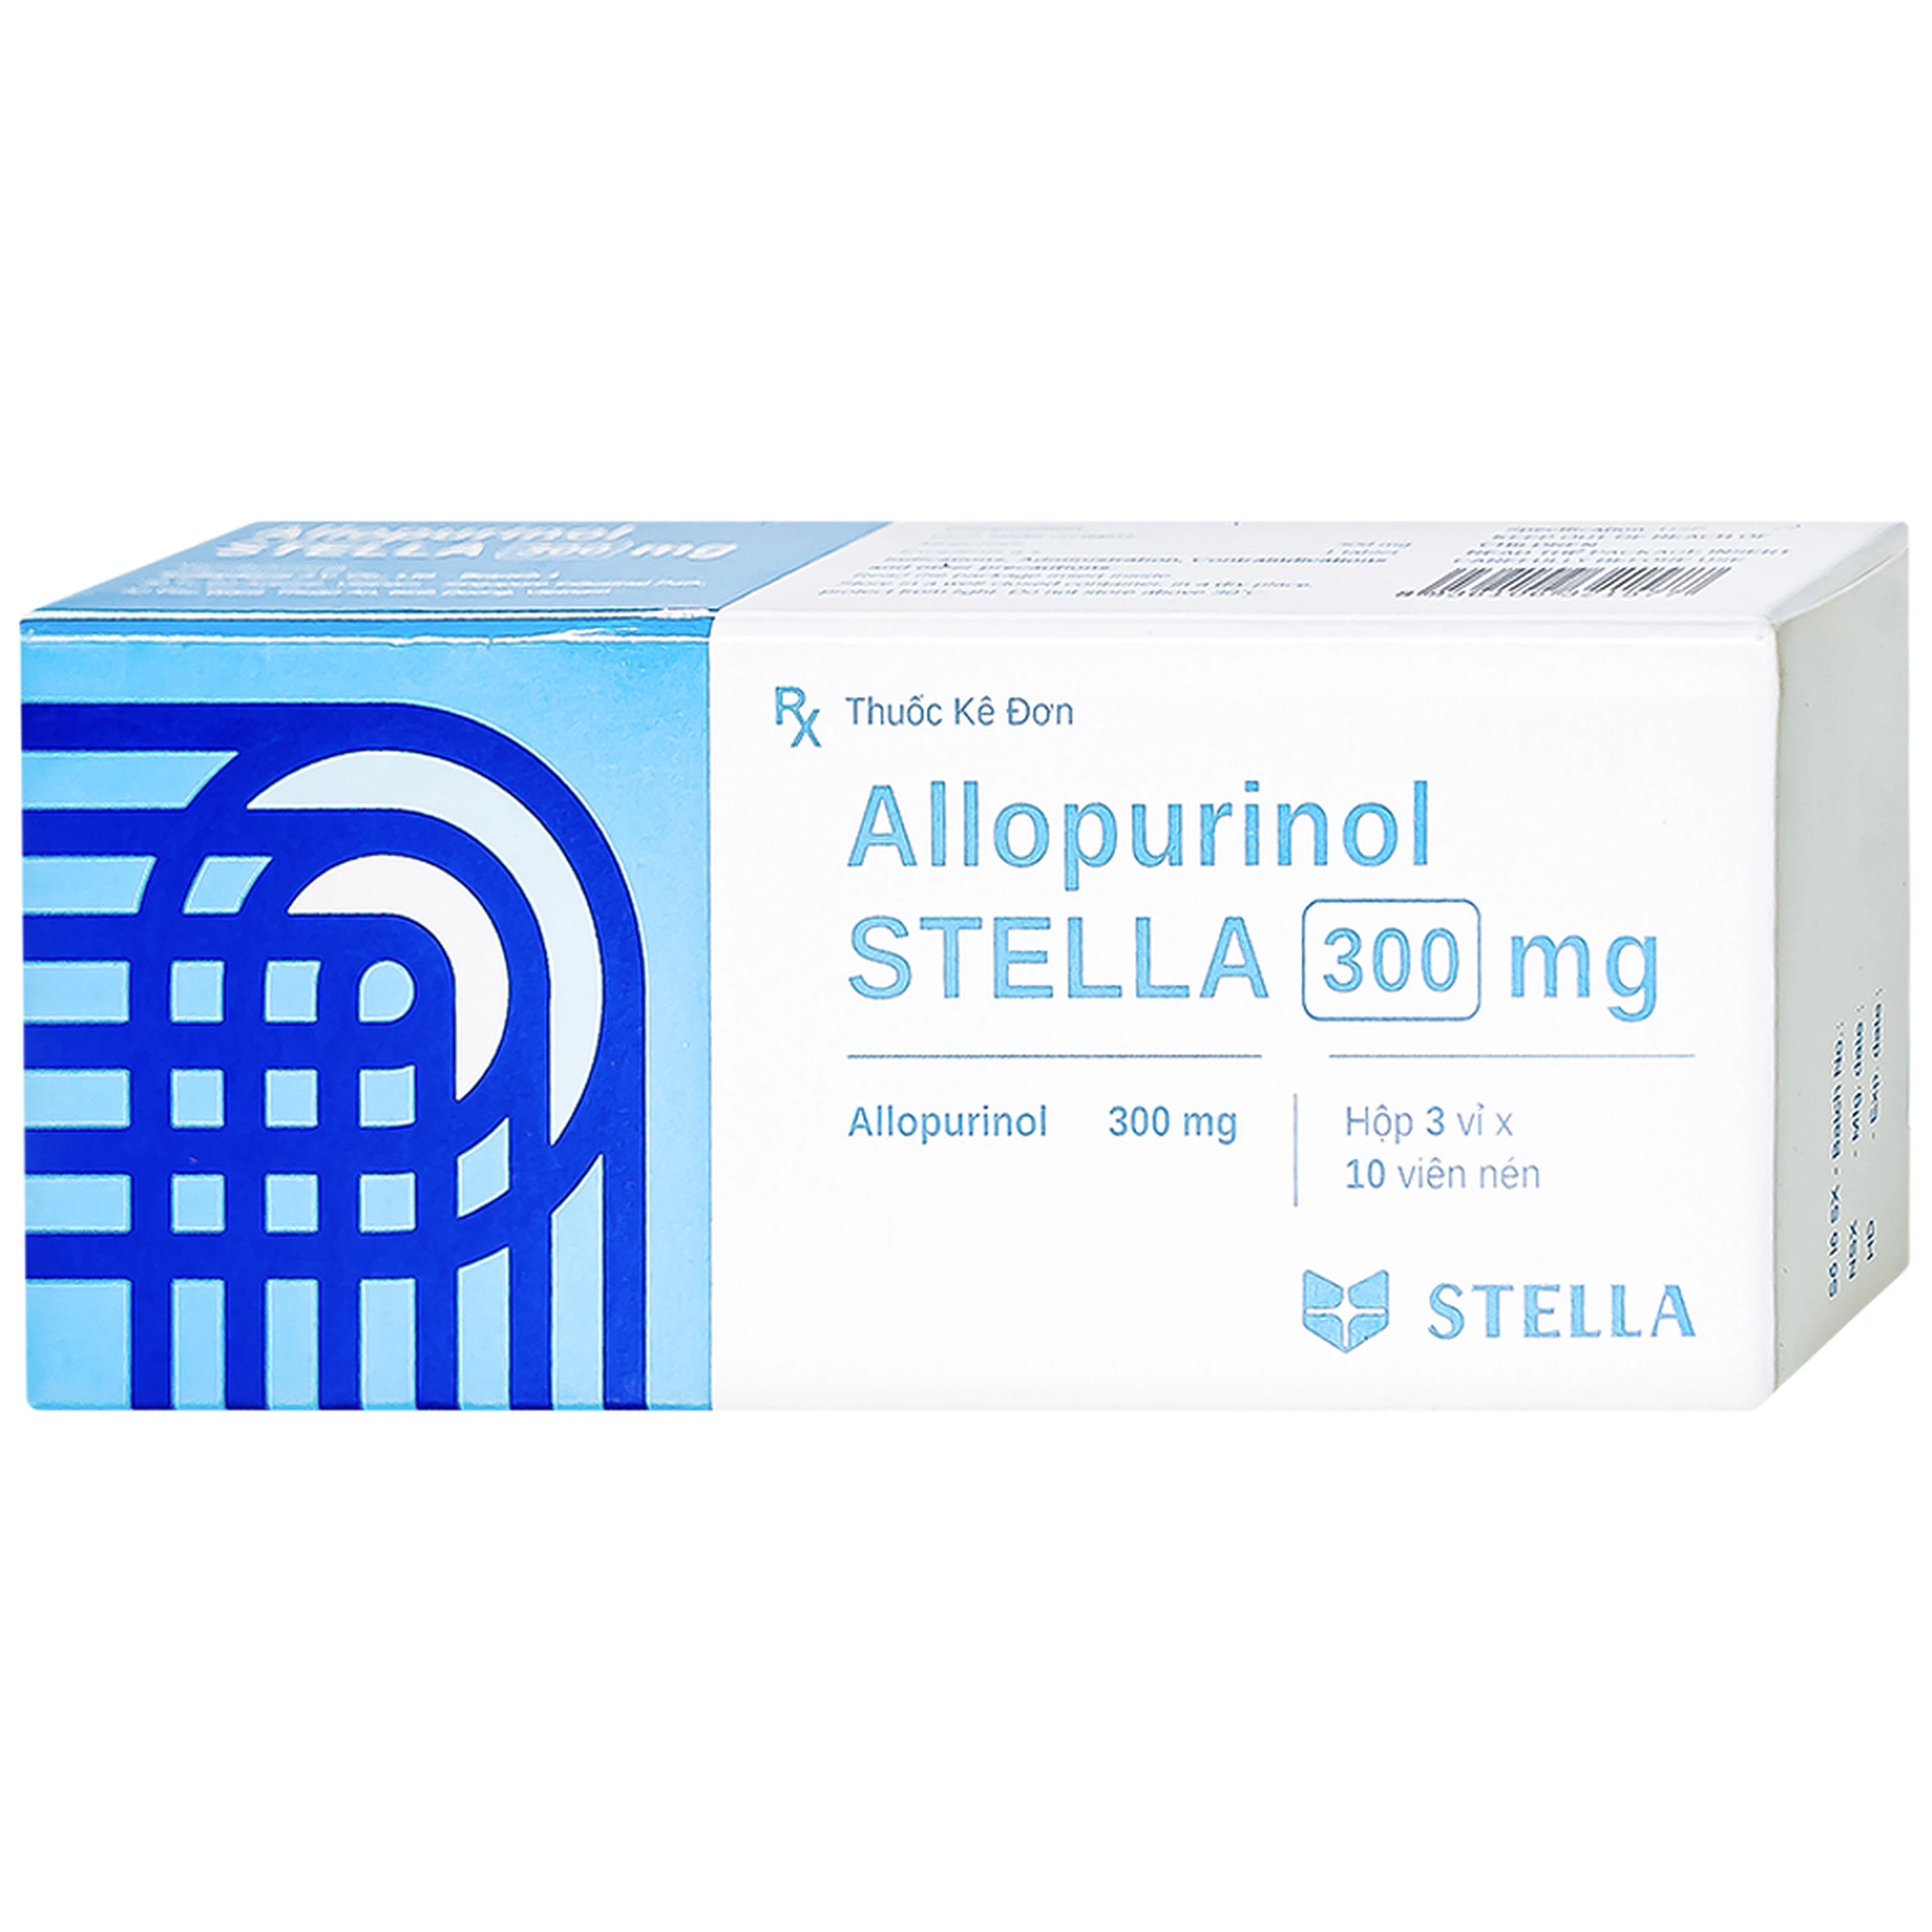 Thuốc Allopurinol Stella 300mg điều trị tăng acid uric máu, sỏi thận (3 vỉ x 10 viên)